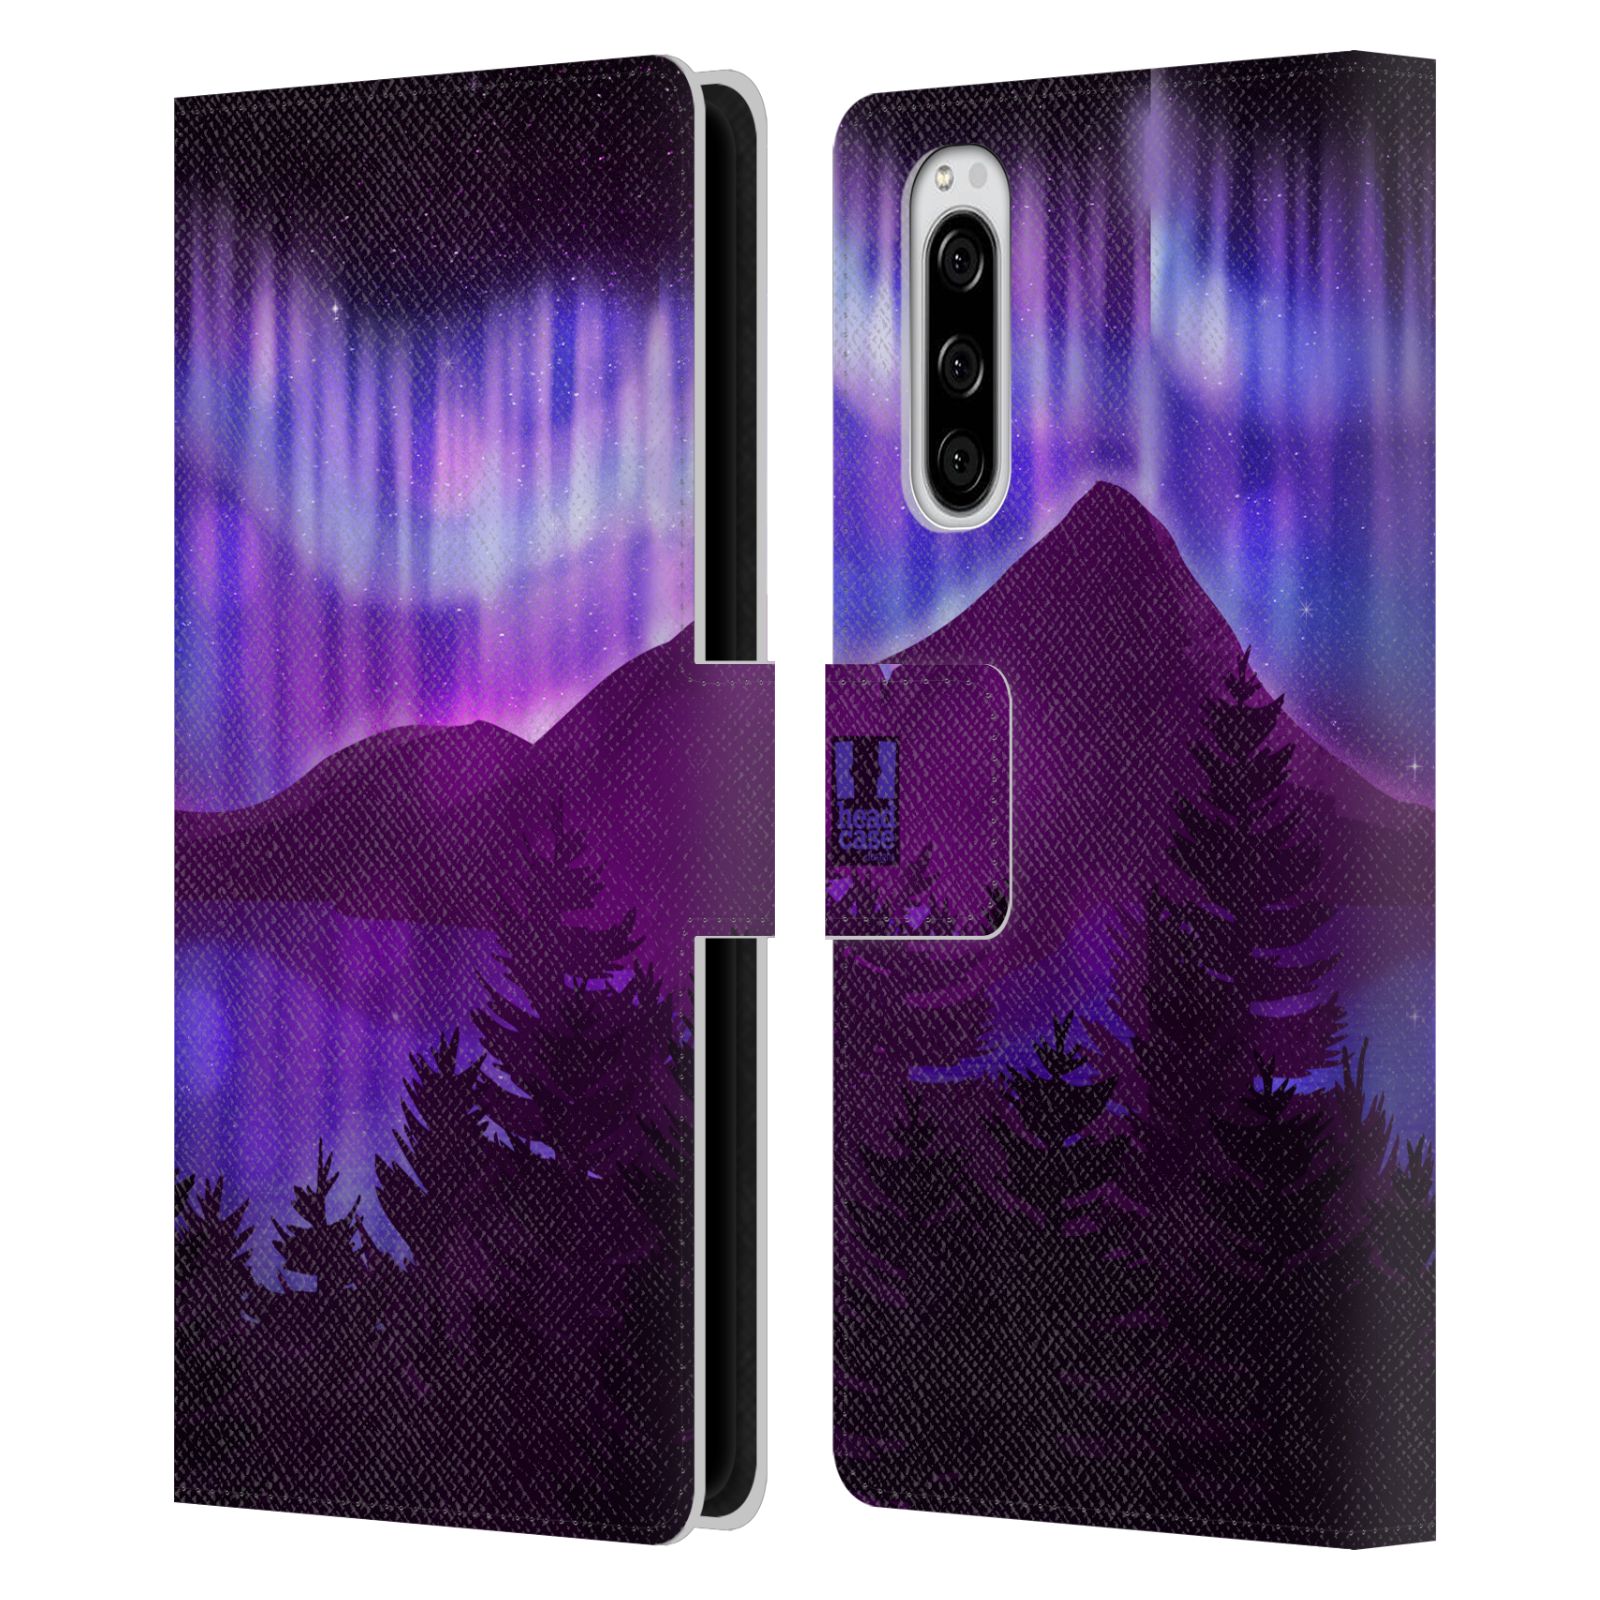 Pouzdro na mobil Sony Xperia 5  - HEAD CASE - Hory a lesy fialový odstín